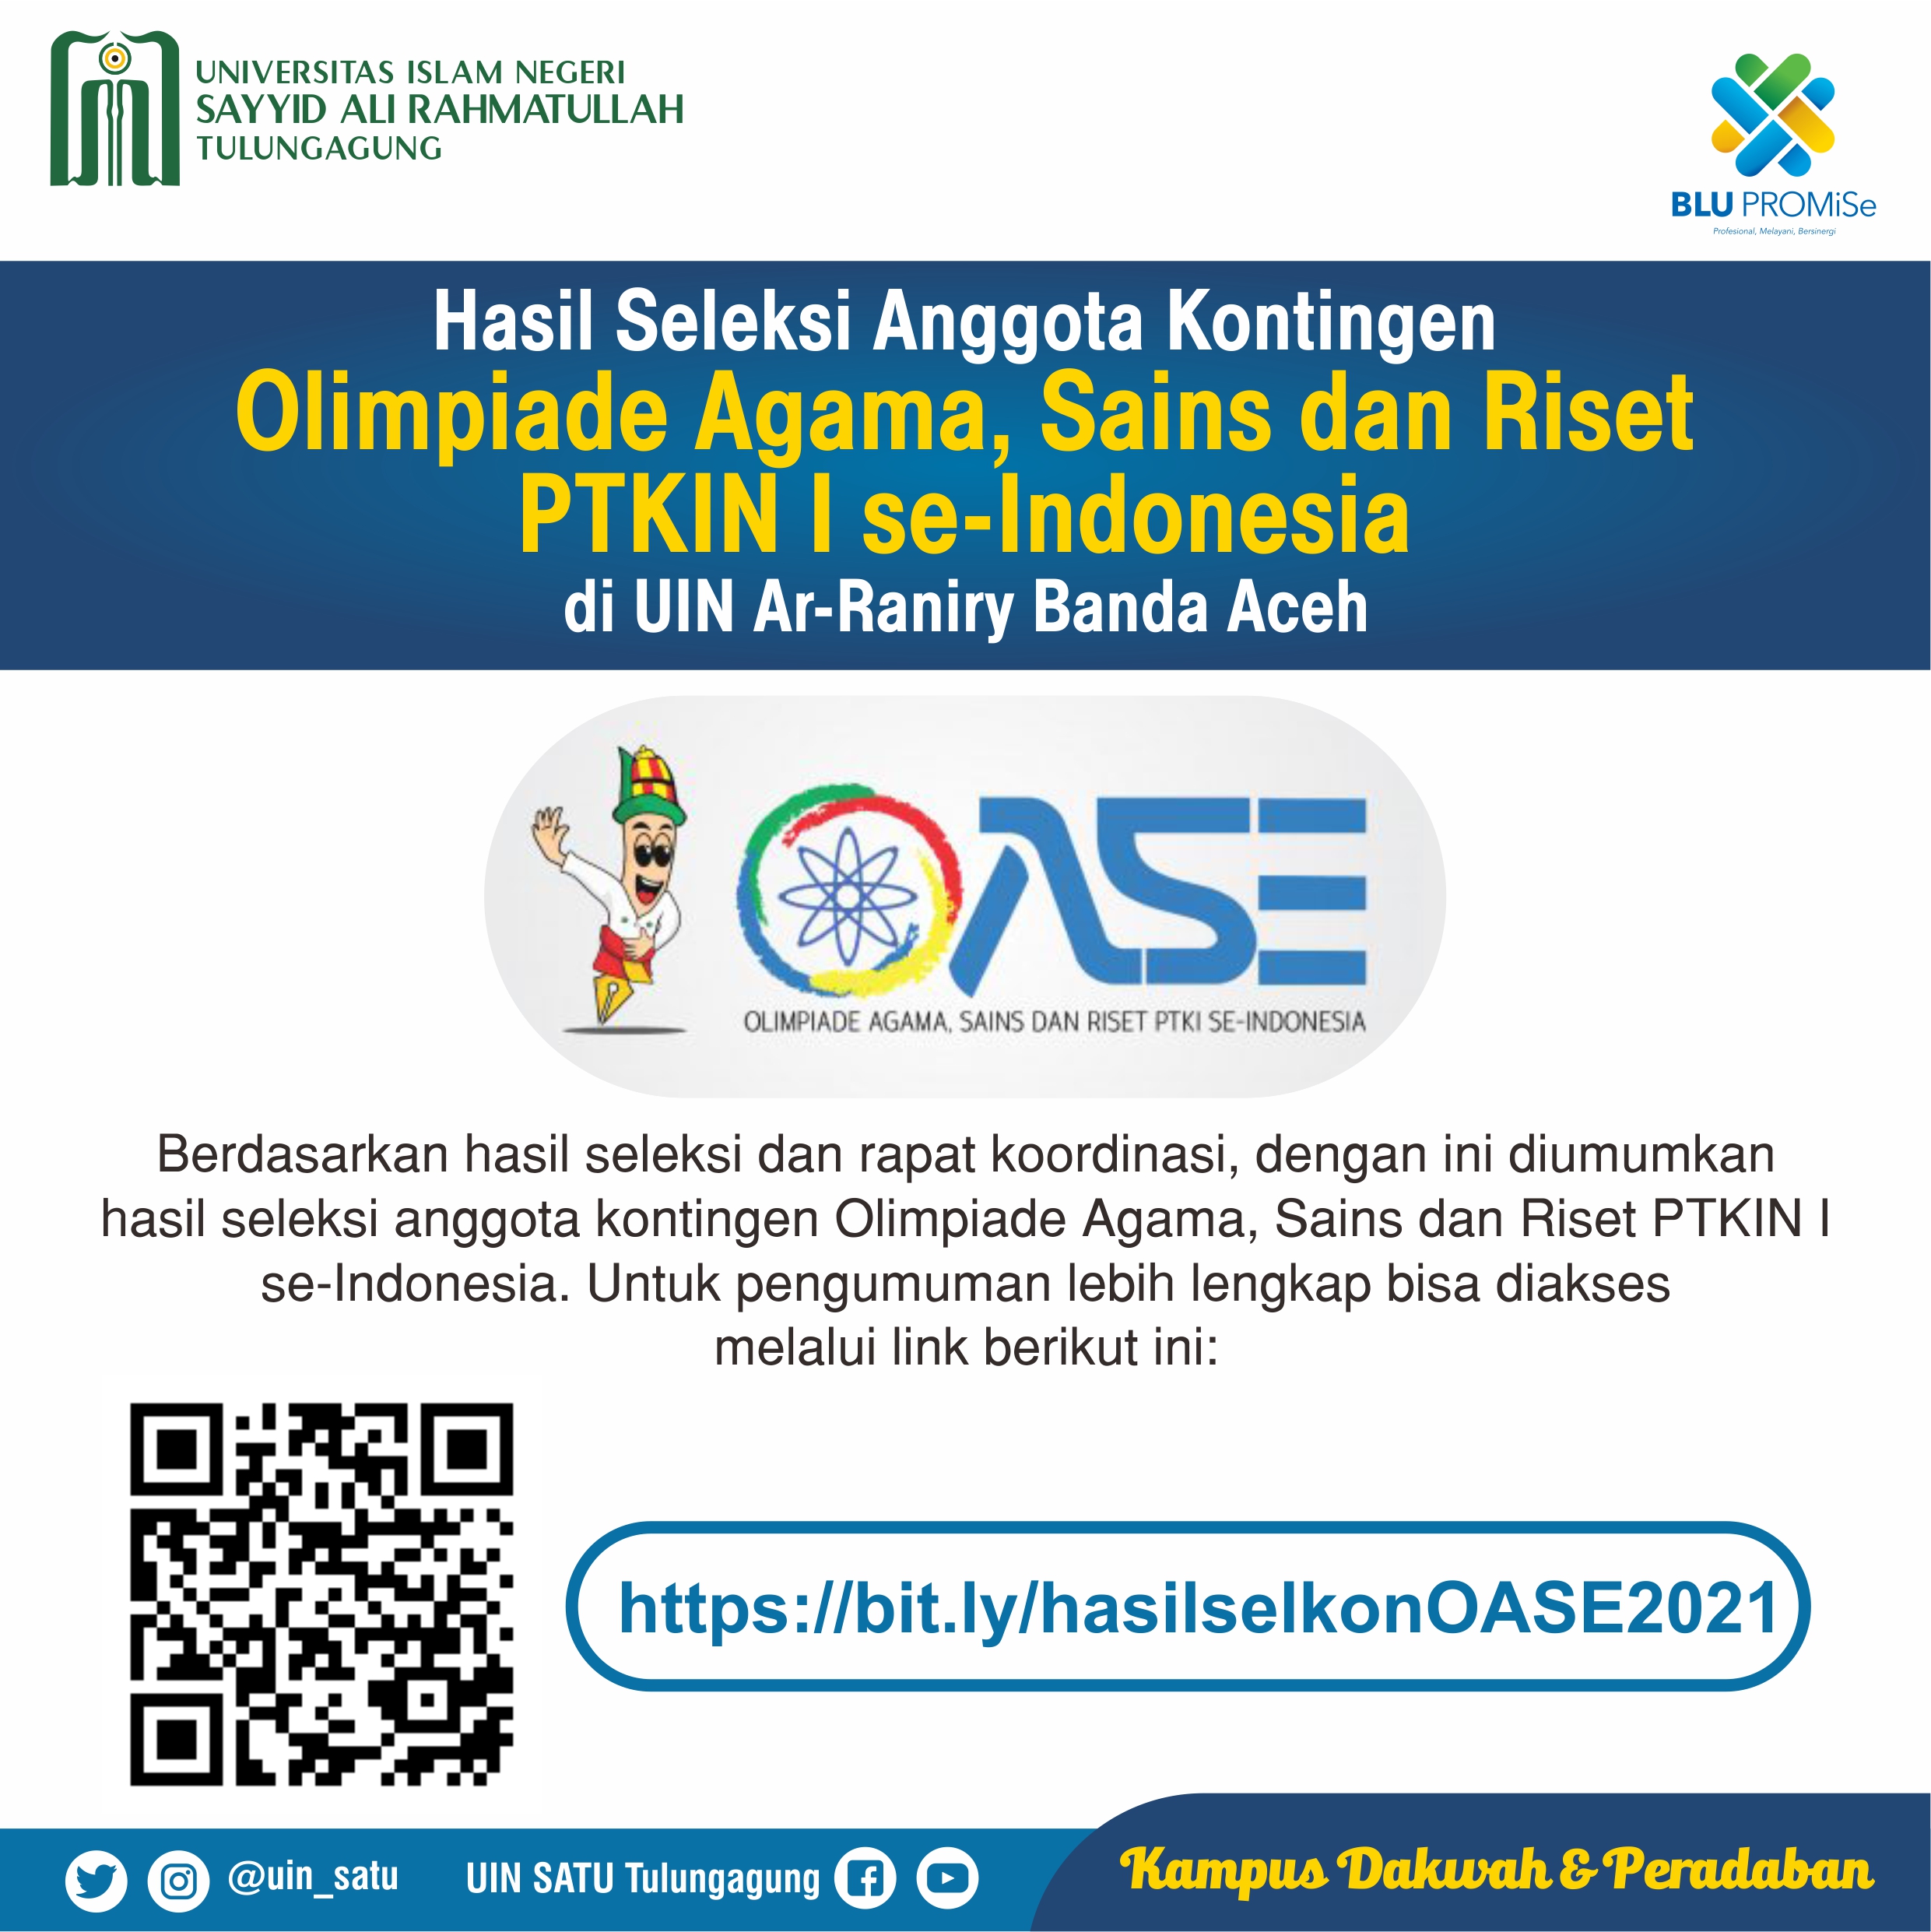 Pengumuman Hasil Seleksi Anggota Kontingen Olimpiade Agama, Sains dan Riset PTKIN I se-Indonesia di UIN Ar-Raniry Banda Aceh